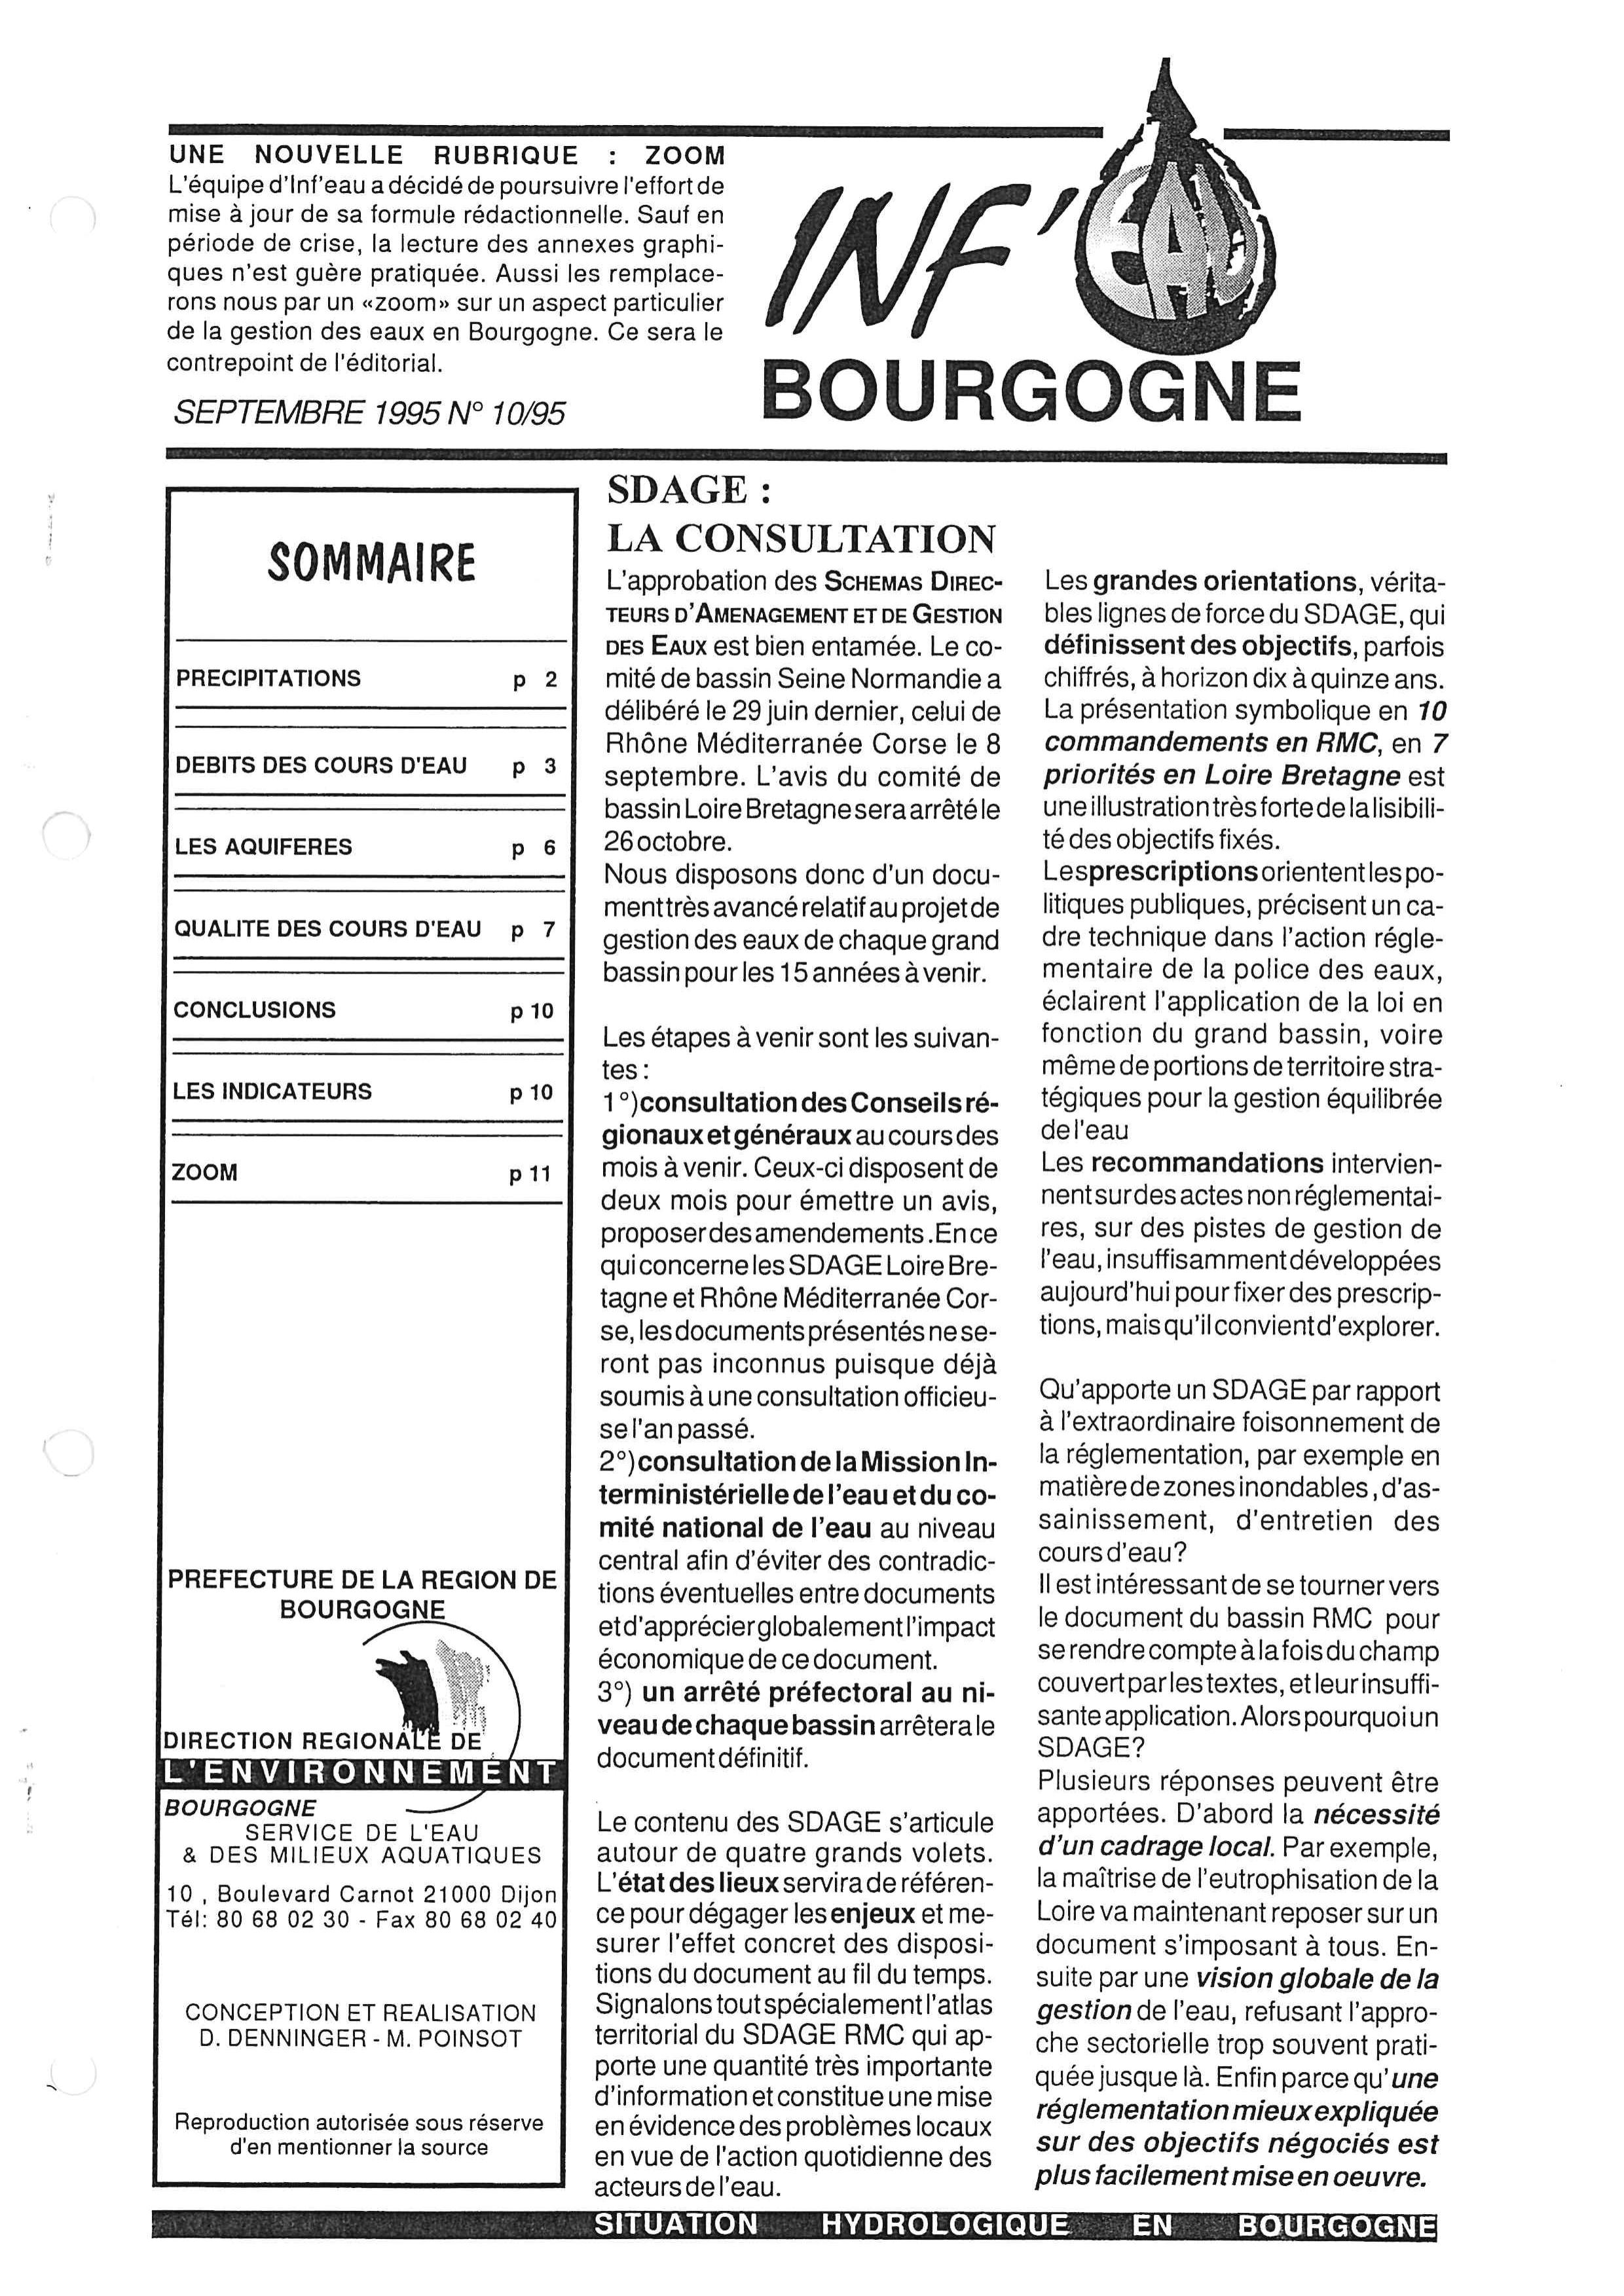 Bulletin hydrologique du mois de septembre 1995